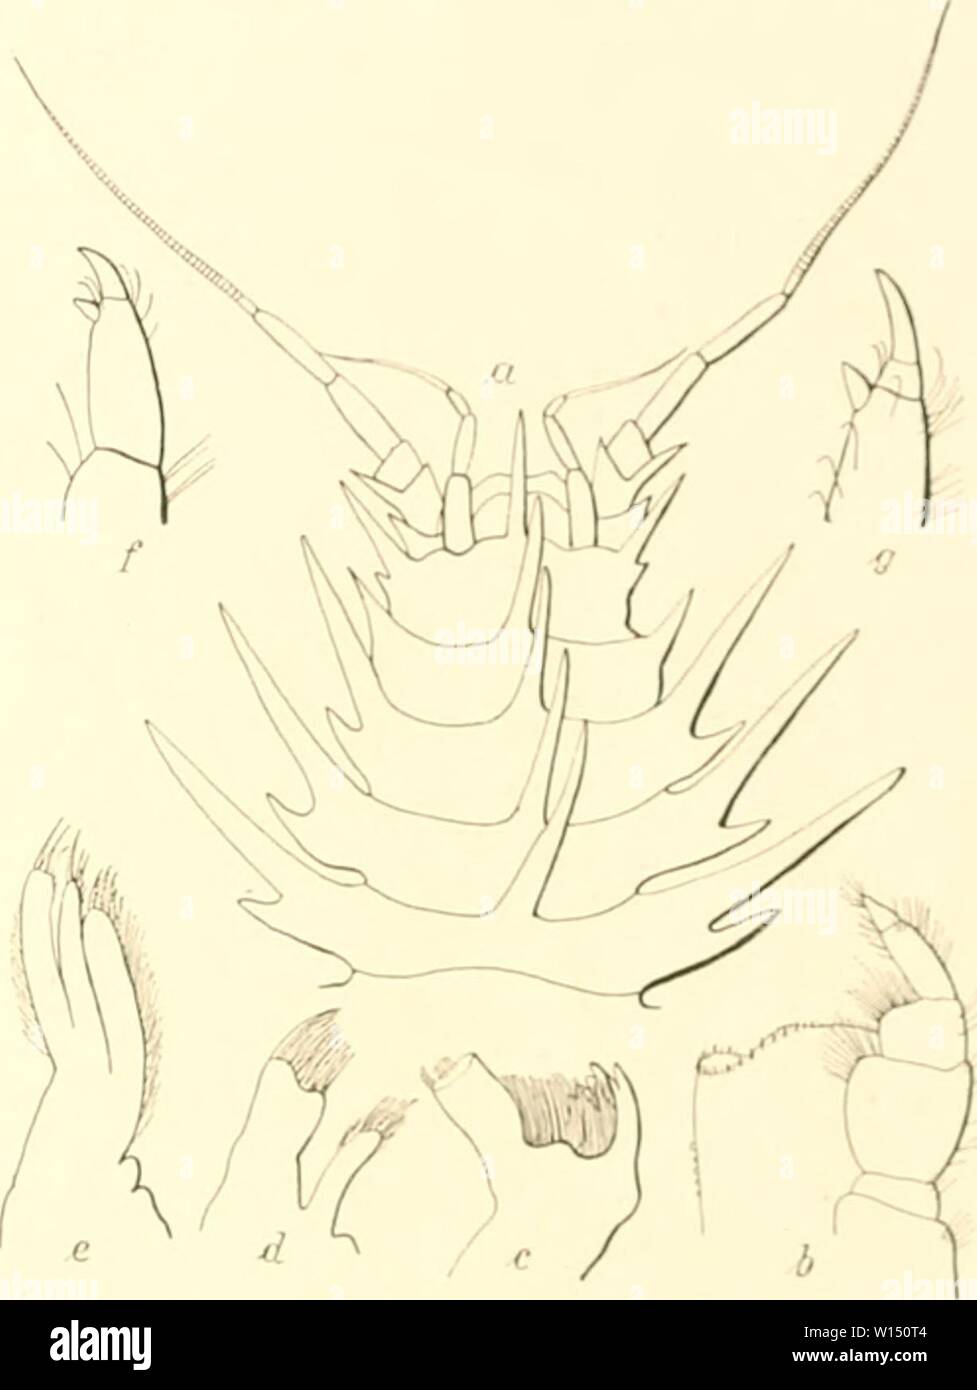 Archive image from page 102 of Die Isopoden der Deutschen Sdpolar-Expedition,. Die Isopoden der Deutschen Sdpolar-Expedition, 1901-1903 . dieisopodenderde00vanh Year: 1914  Va.nhöfkkn, IsoiJOileii. 539 so. Jolantlio ac;iii(lniiiiiliis Ükm.akh. (Abi), tö a ij.) Diese Art wurde 1874 vom Challenger unter 65' 42' s. Br. und 7'J' 4!»' ü. L. in :}uü:} m Tiefe entdeckt und war seitdem nicht wieder&lt;iefunden worden. Nicht weit von derselben Stelle unter 65' 27's. Br. und 80' 33' ö. L. erhielt ich bei einem Dretschfange aus 3398 ni Tiefe am 30. 111. I'i(i3 bei einer Tiefentemperatur von —1,80' C Rest Stock Photo